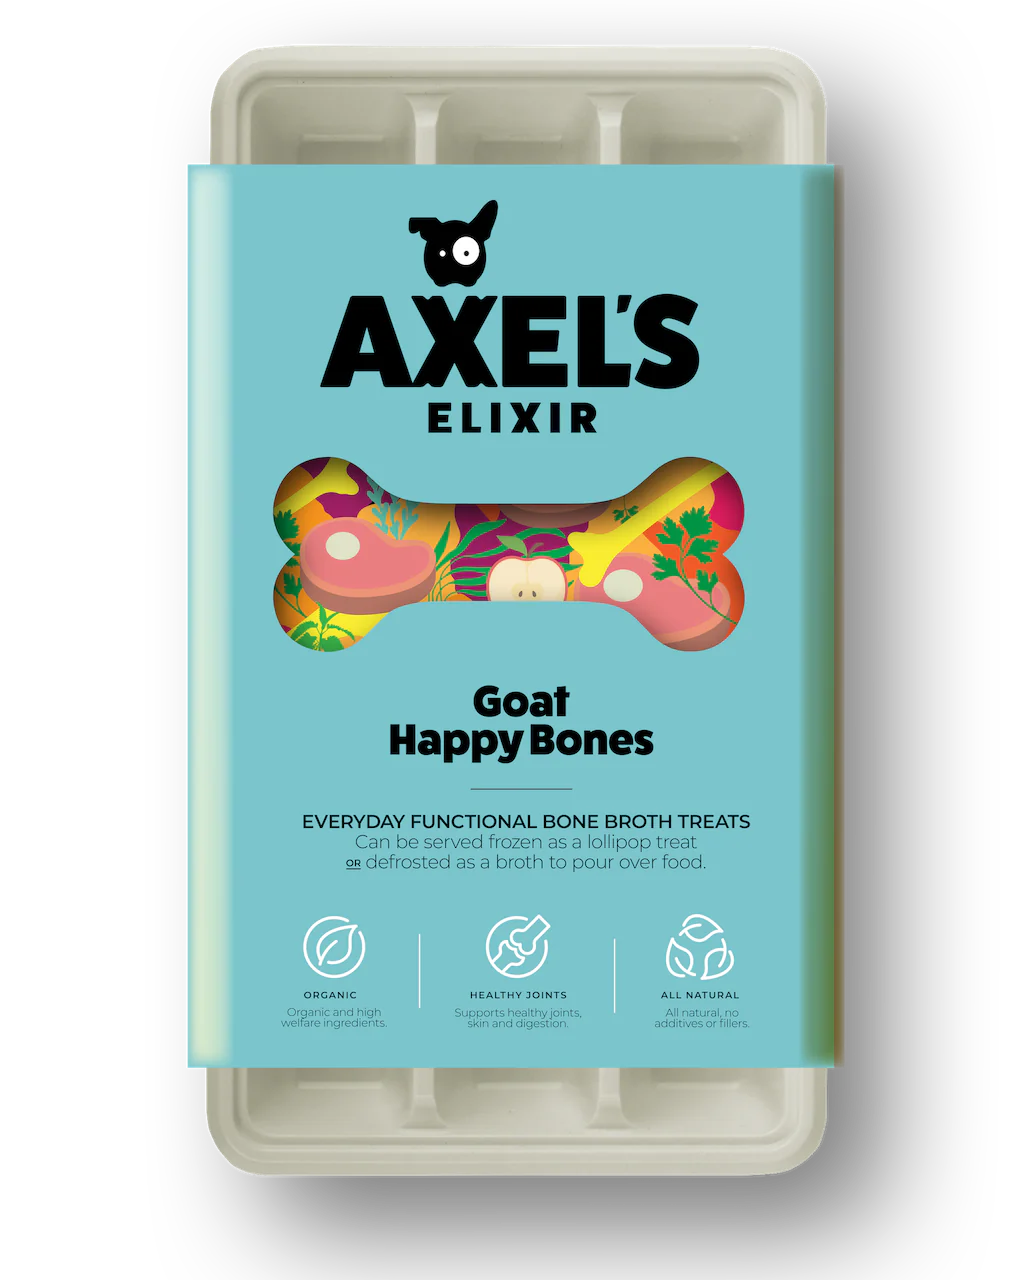 Axel’s Elixir Goat Happy Bones